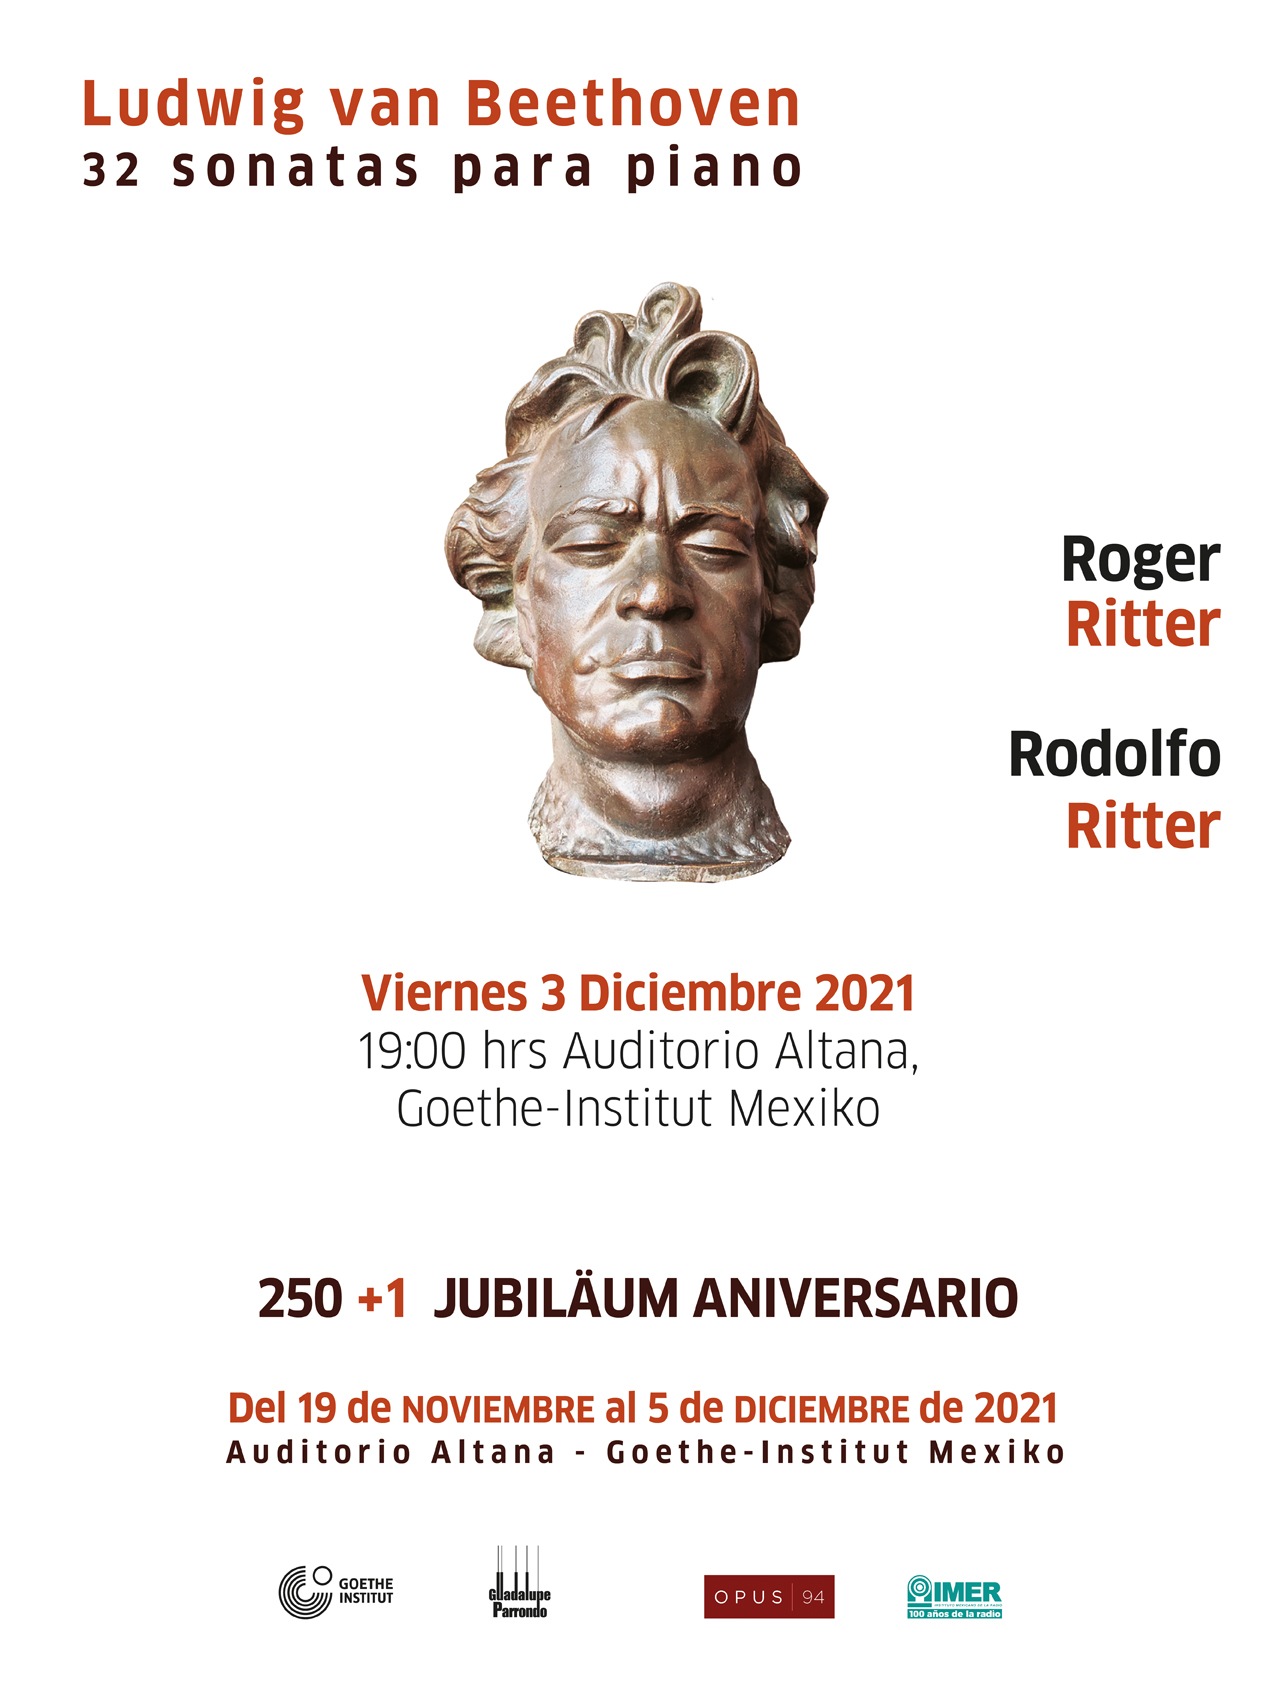 Roger Ritter Rodolfo Ritter resized